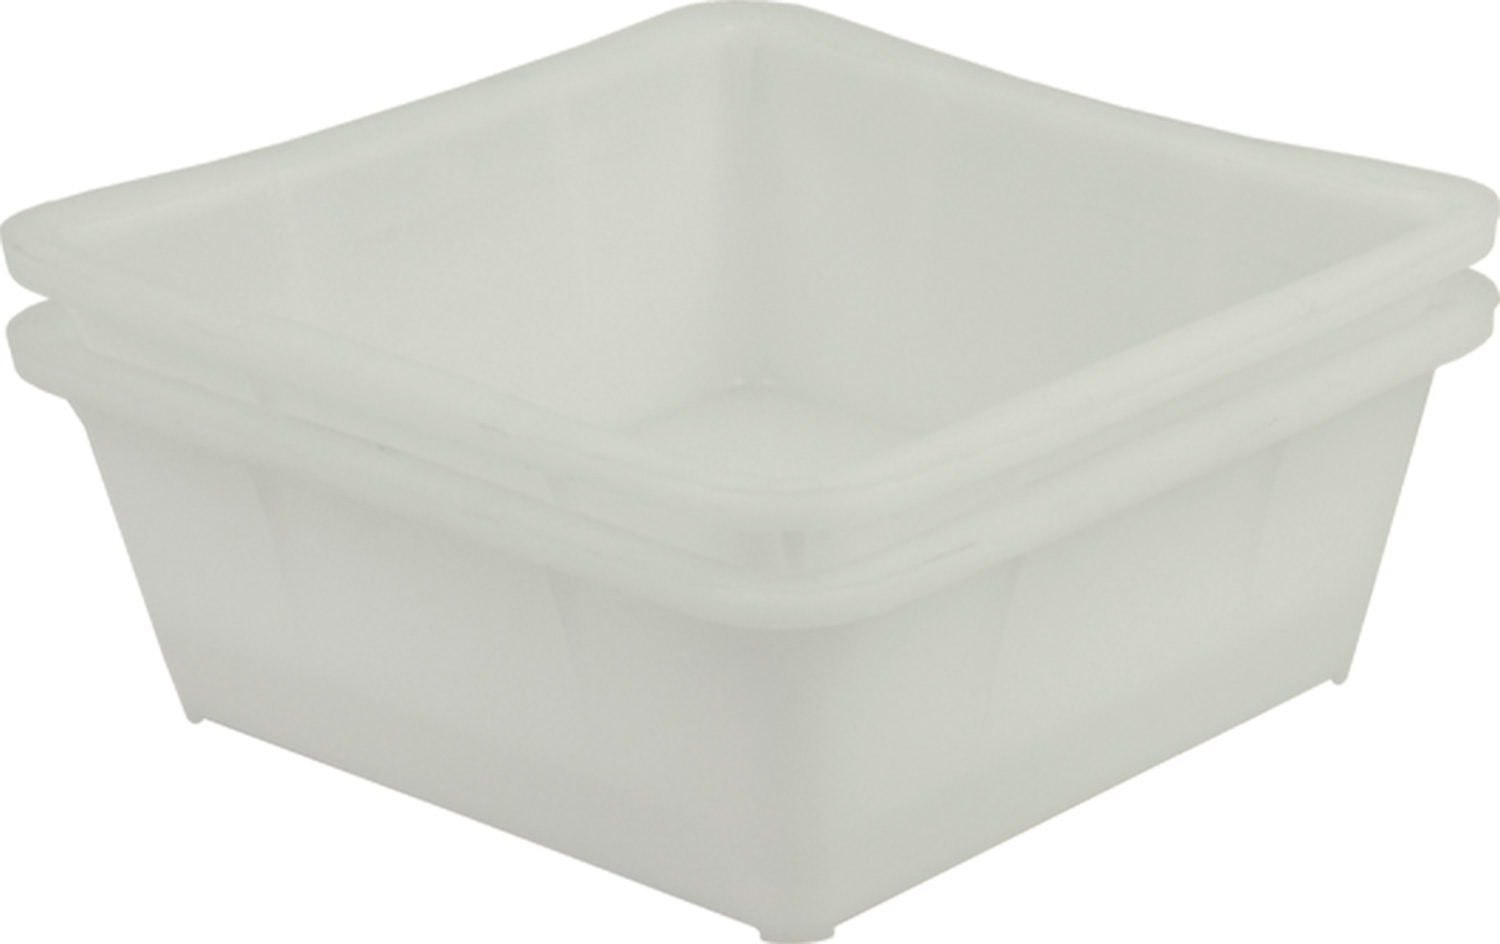 Ящик пищевой 217-1 м размером 430х430х160 мм для заморозки белый вес 1,3 кг конусный сплошной пластиковый